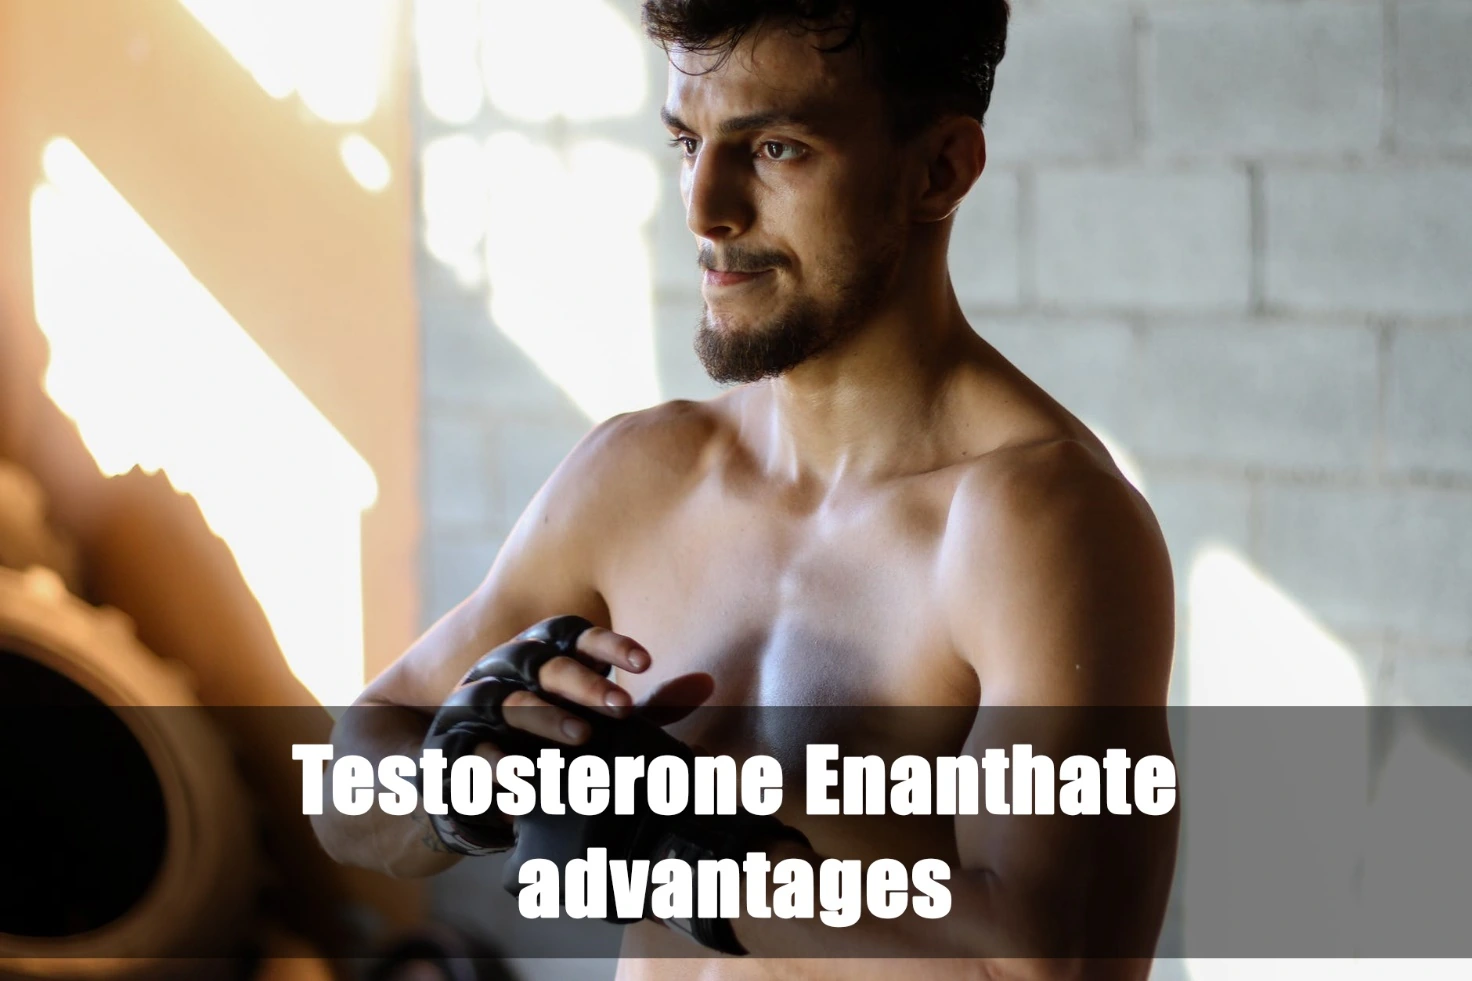 Vantaggi del testosterone enantato